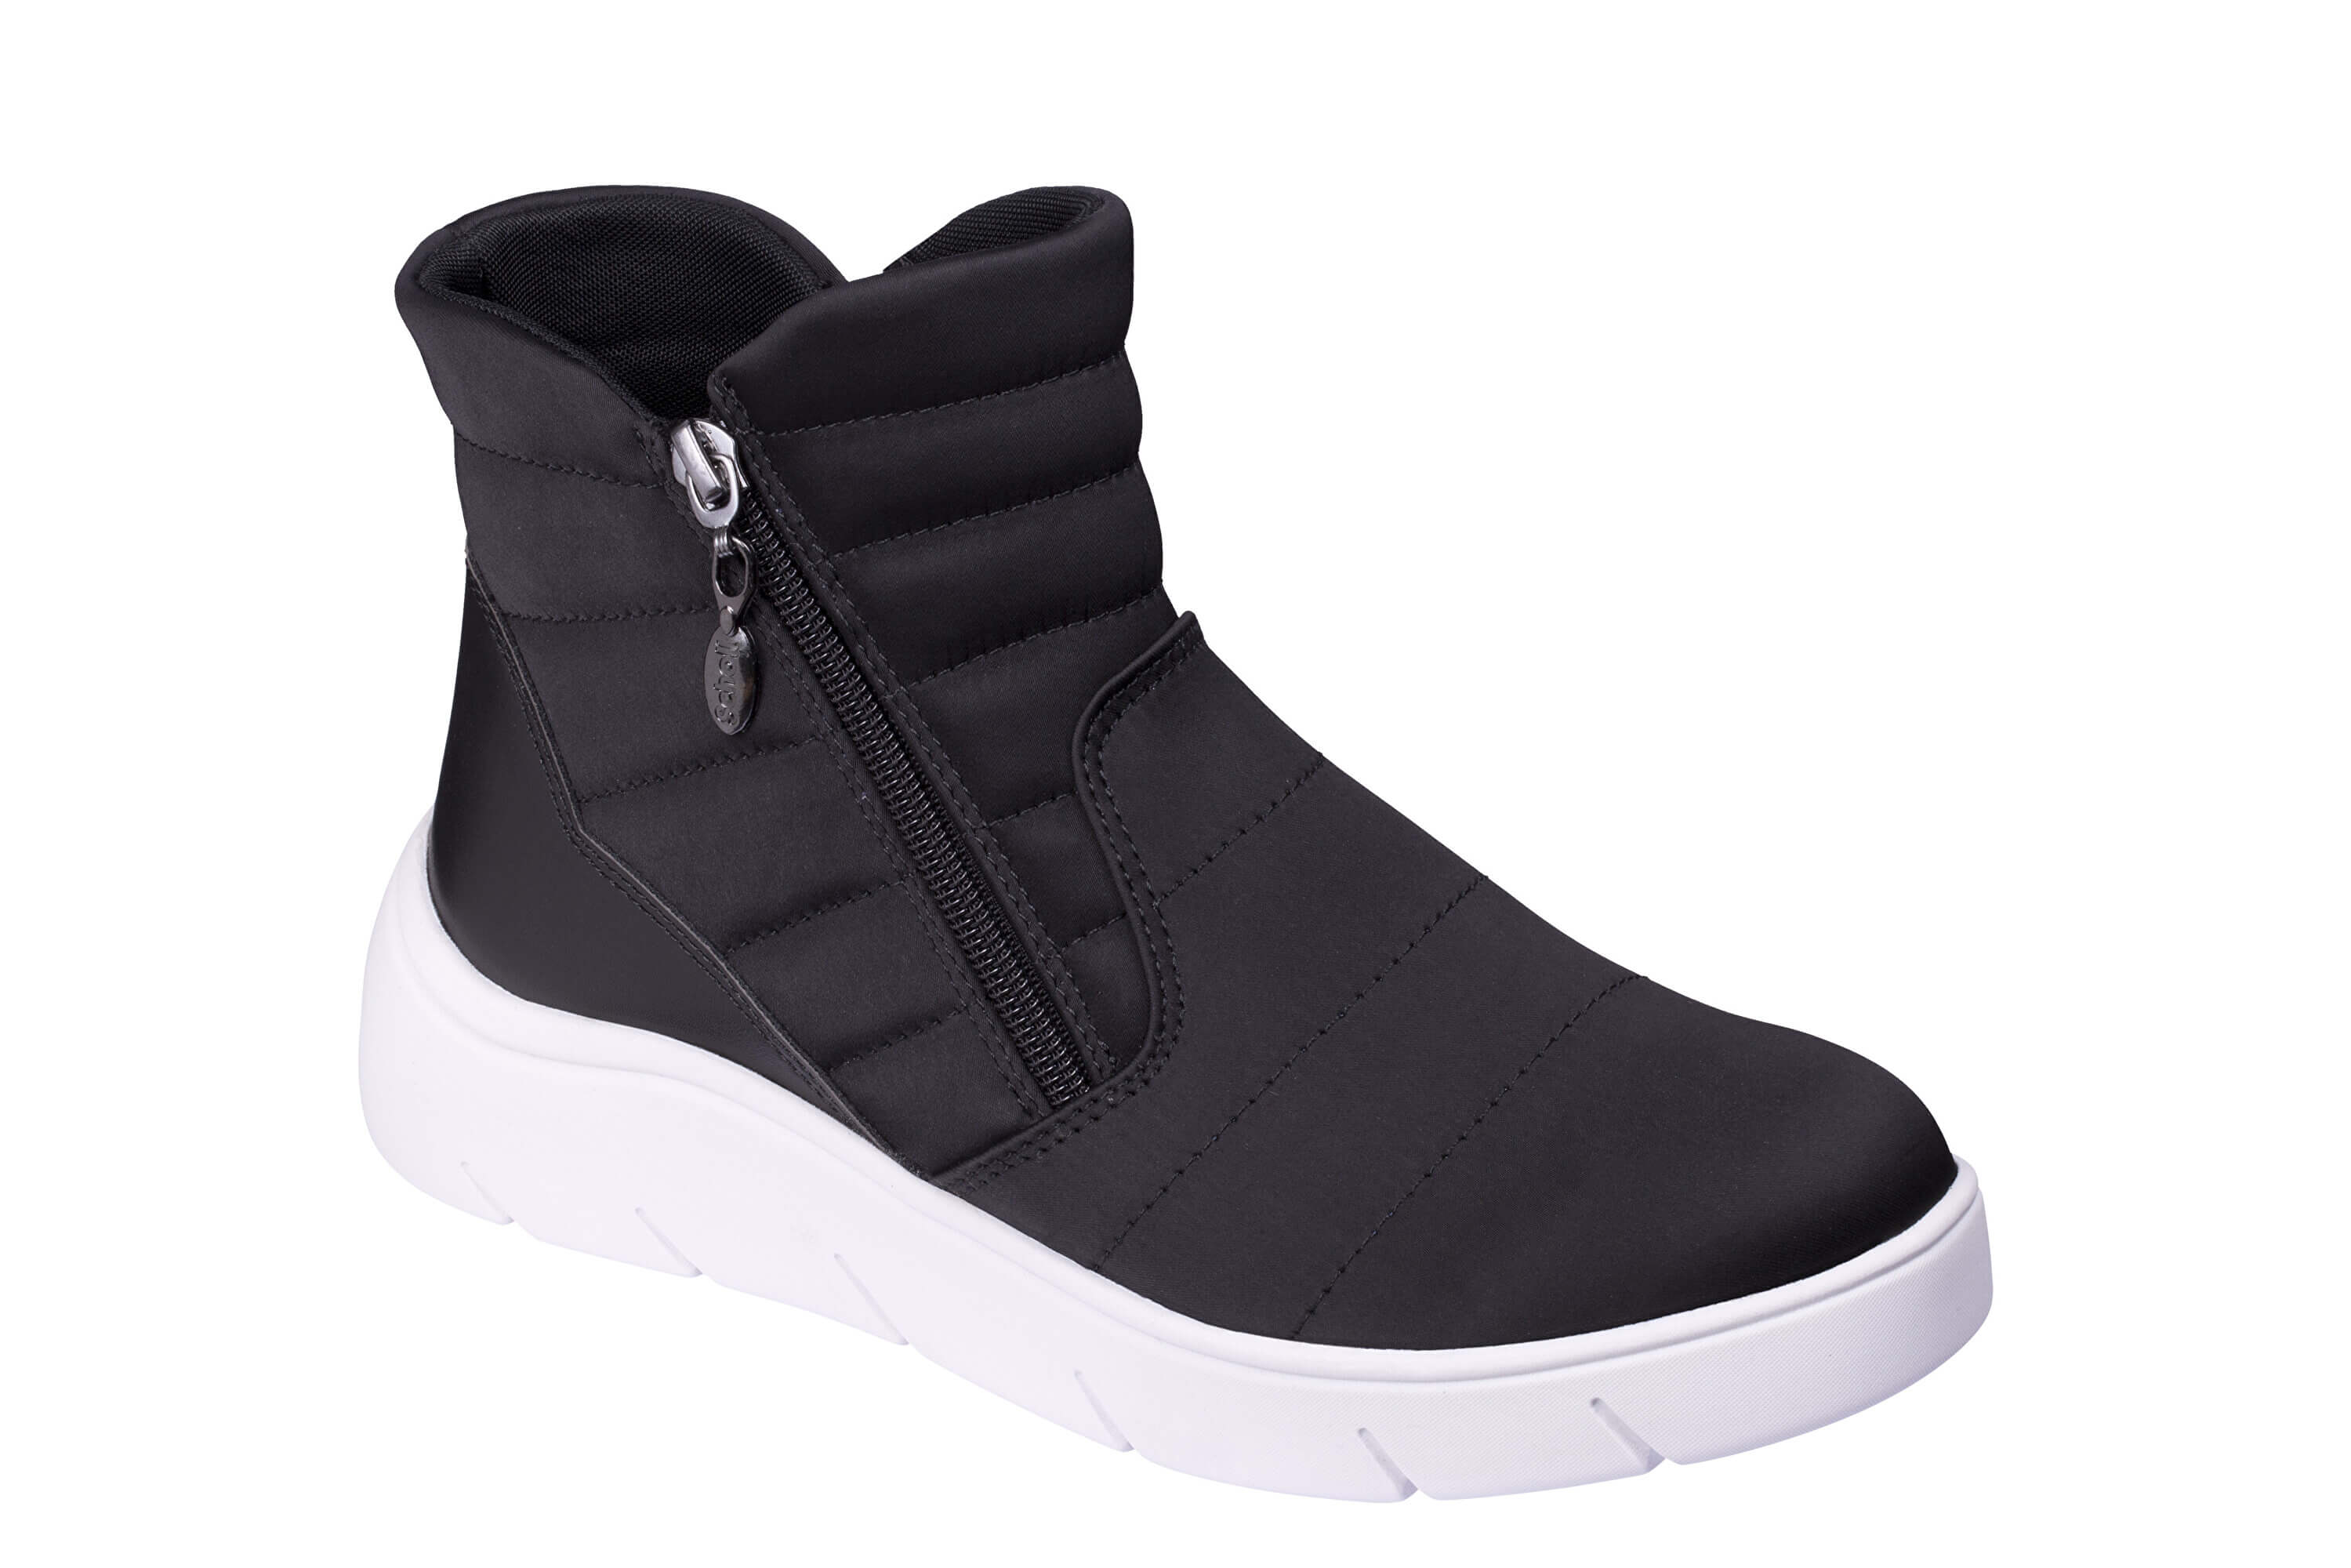 Zobrazit detail výrobku Scholl Zdravotní obuv - APRICA Black 42 + 2 měsíce na vrácení zboží